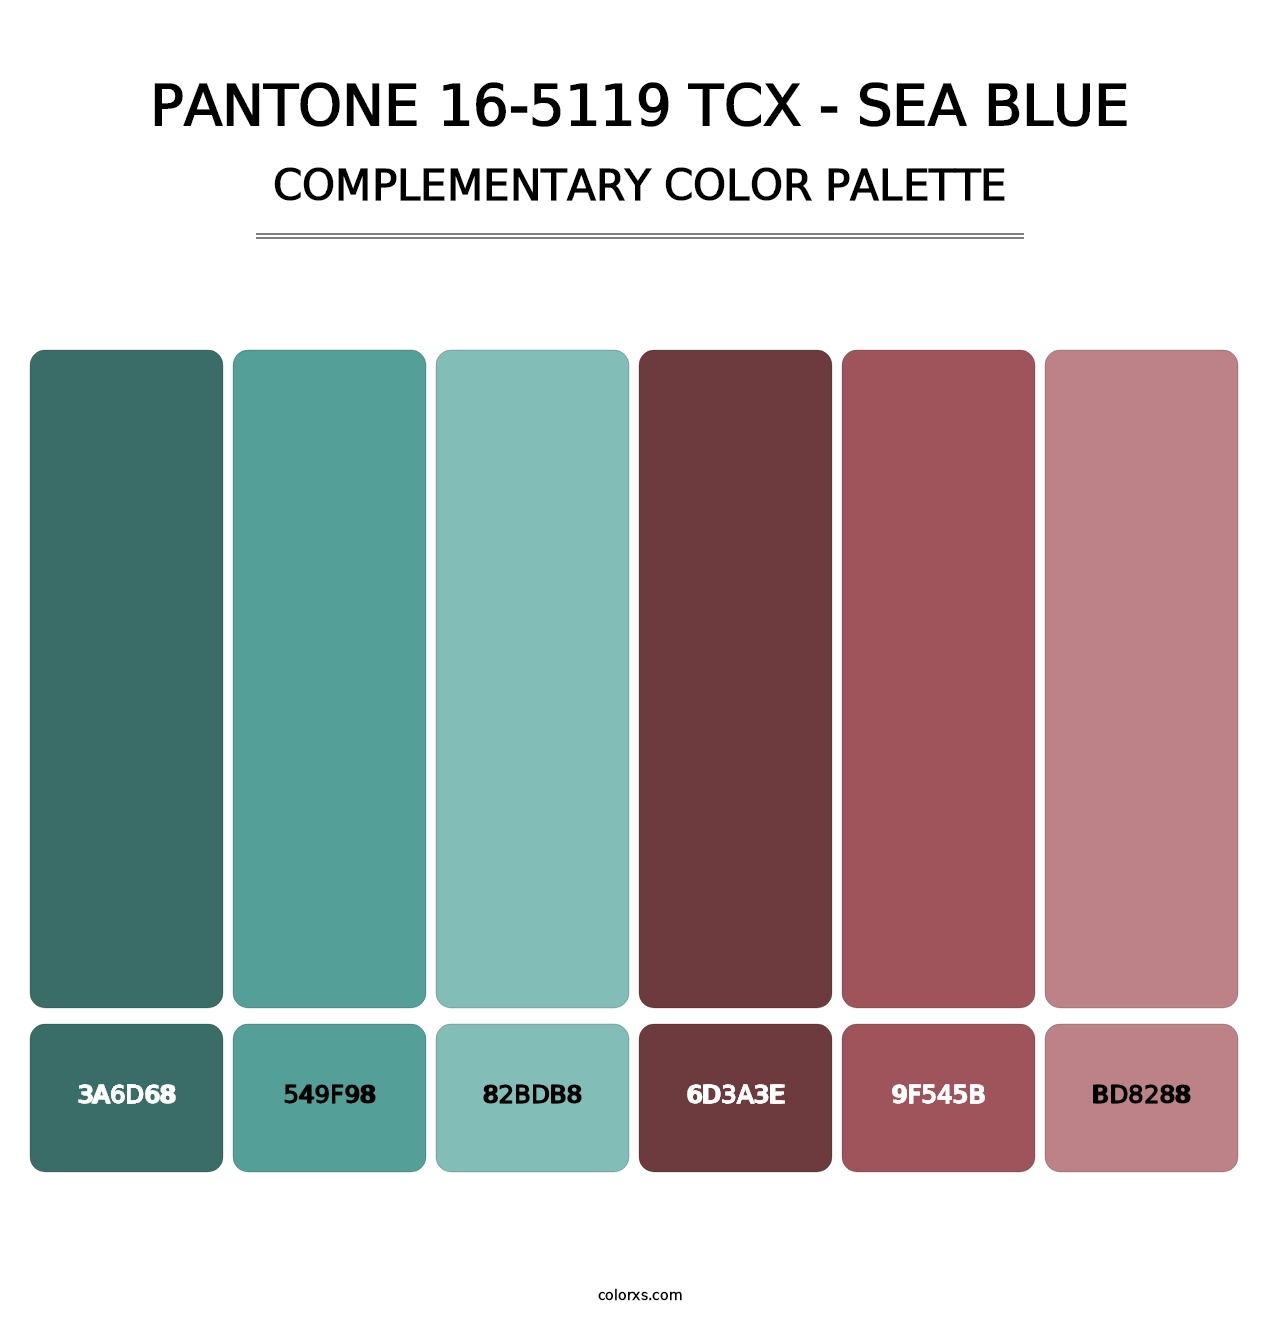 PANTONE 16-5119 TCX - Sea Blue - Complementary Color Palette